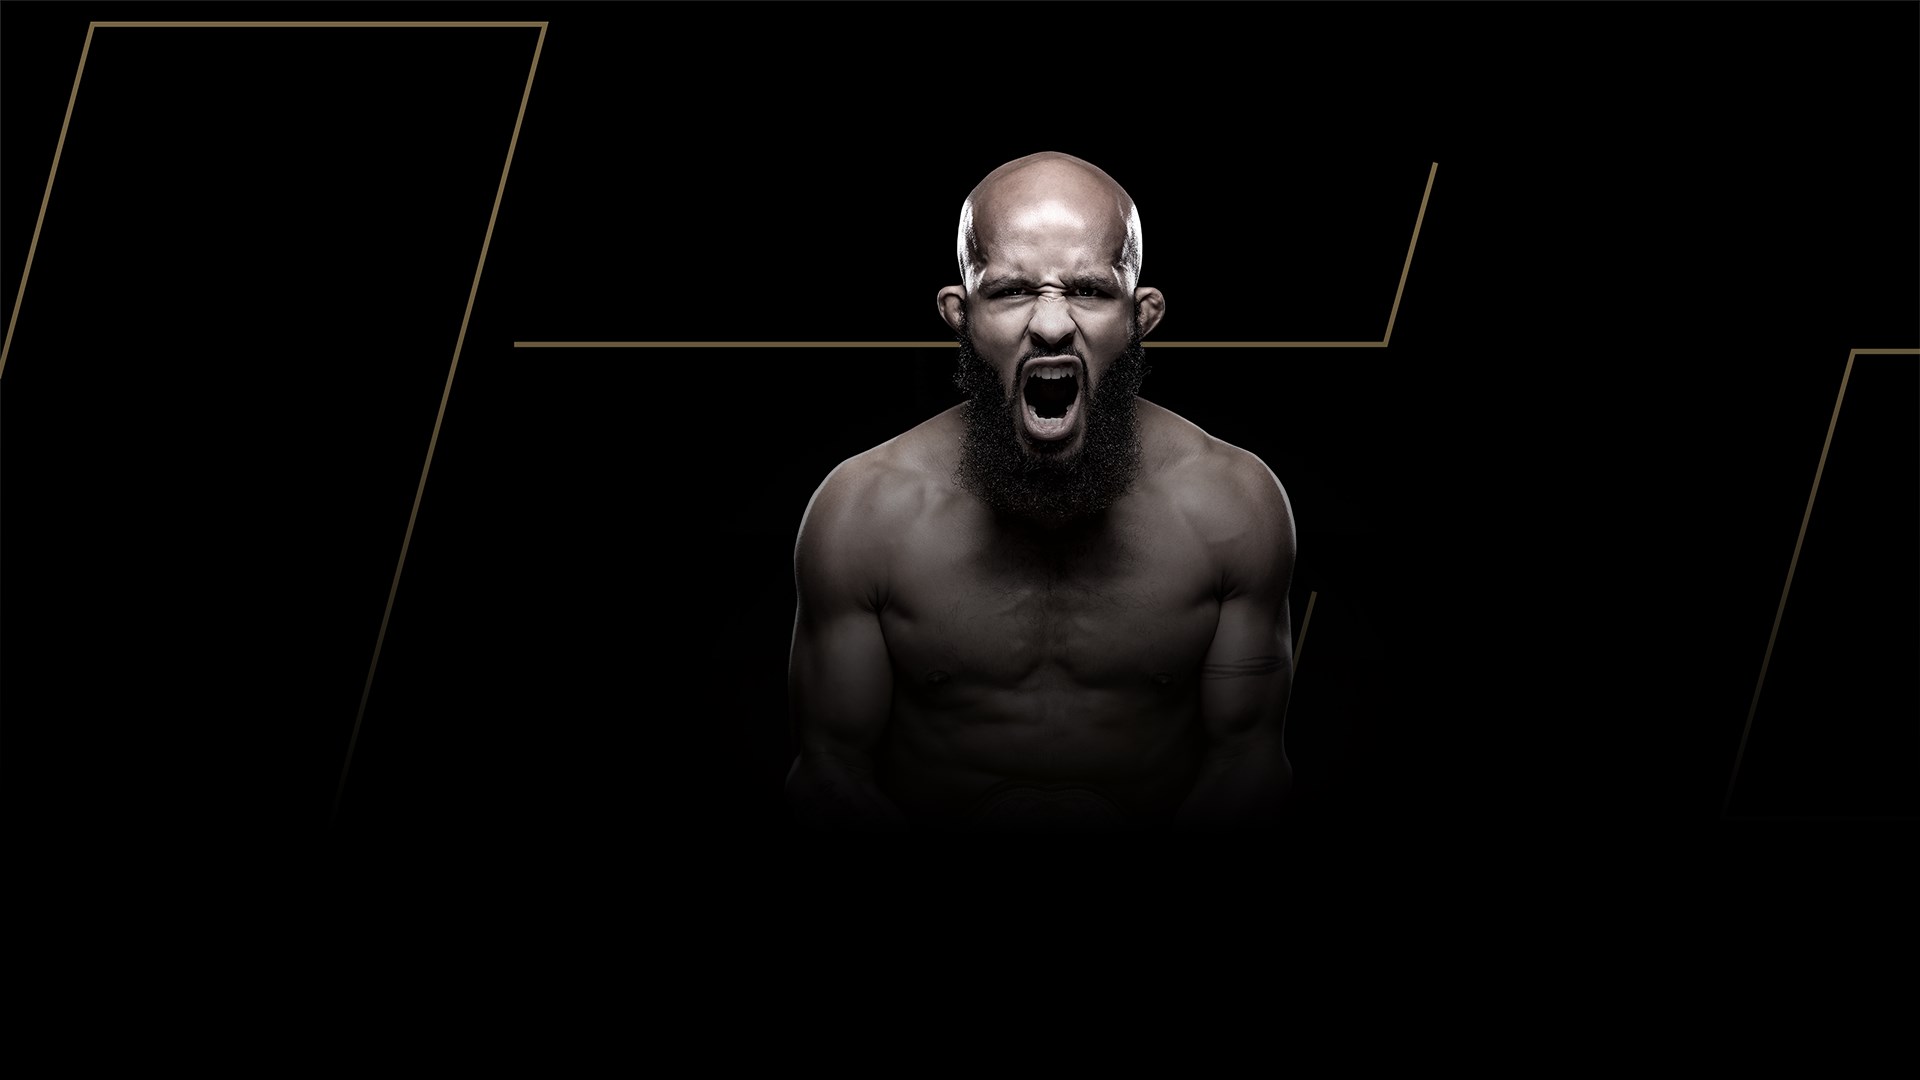 Contenu EA SPORTS™ UFC® 3 Édition Icône